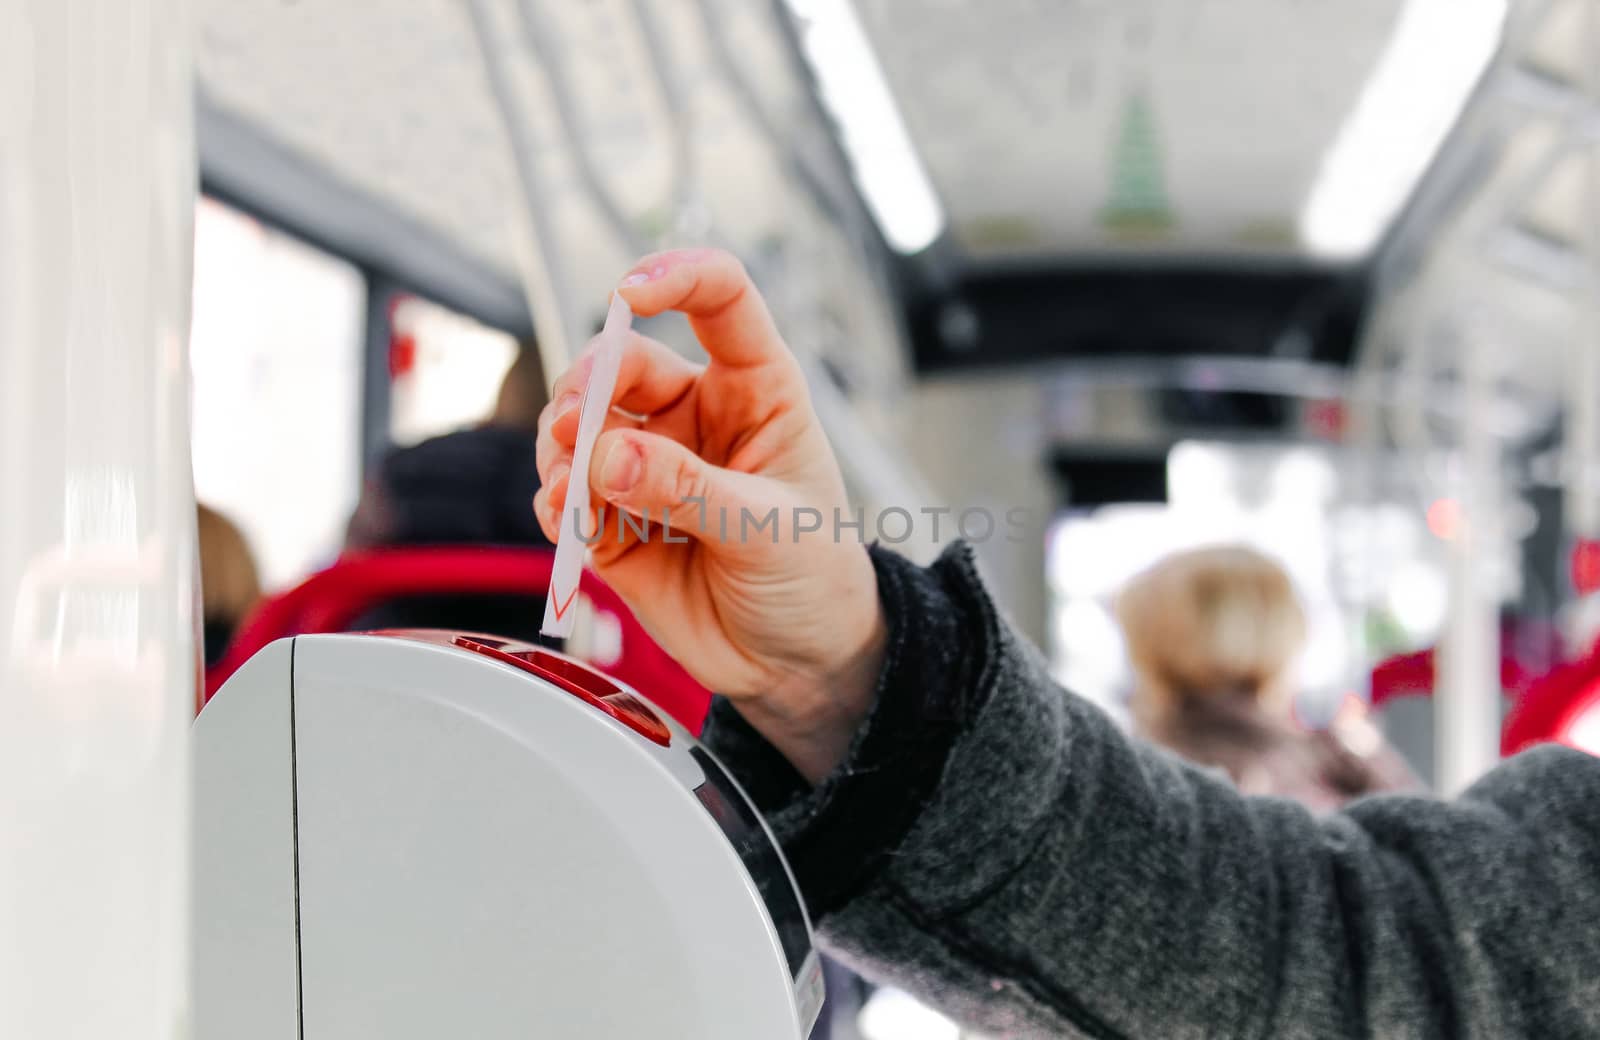 bus ticket insert in validator hand background